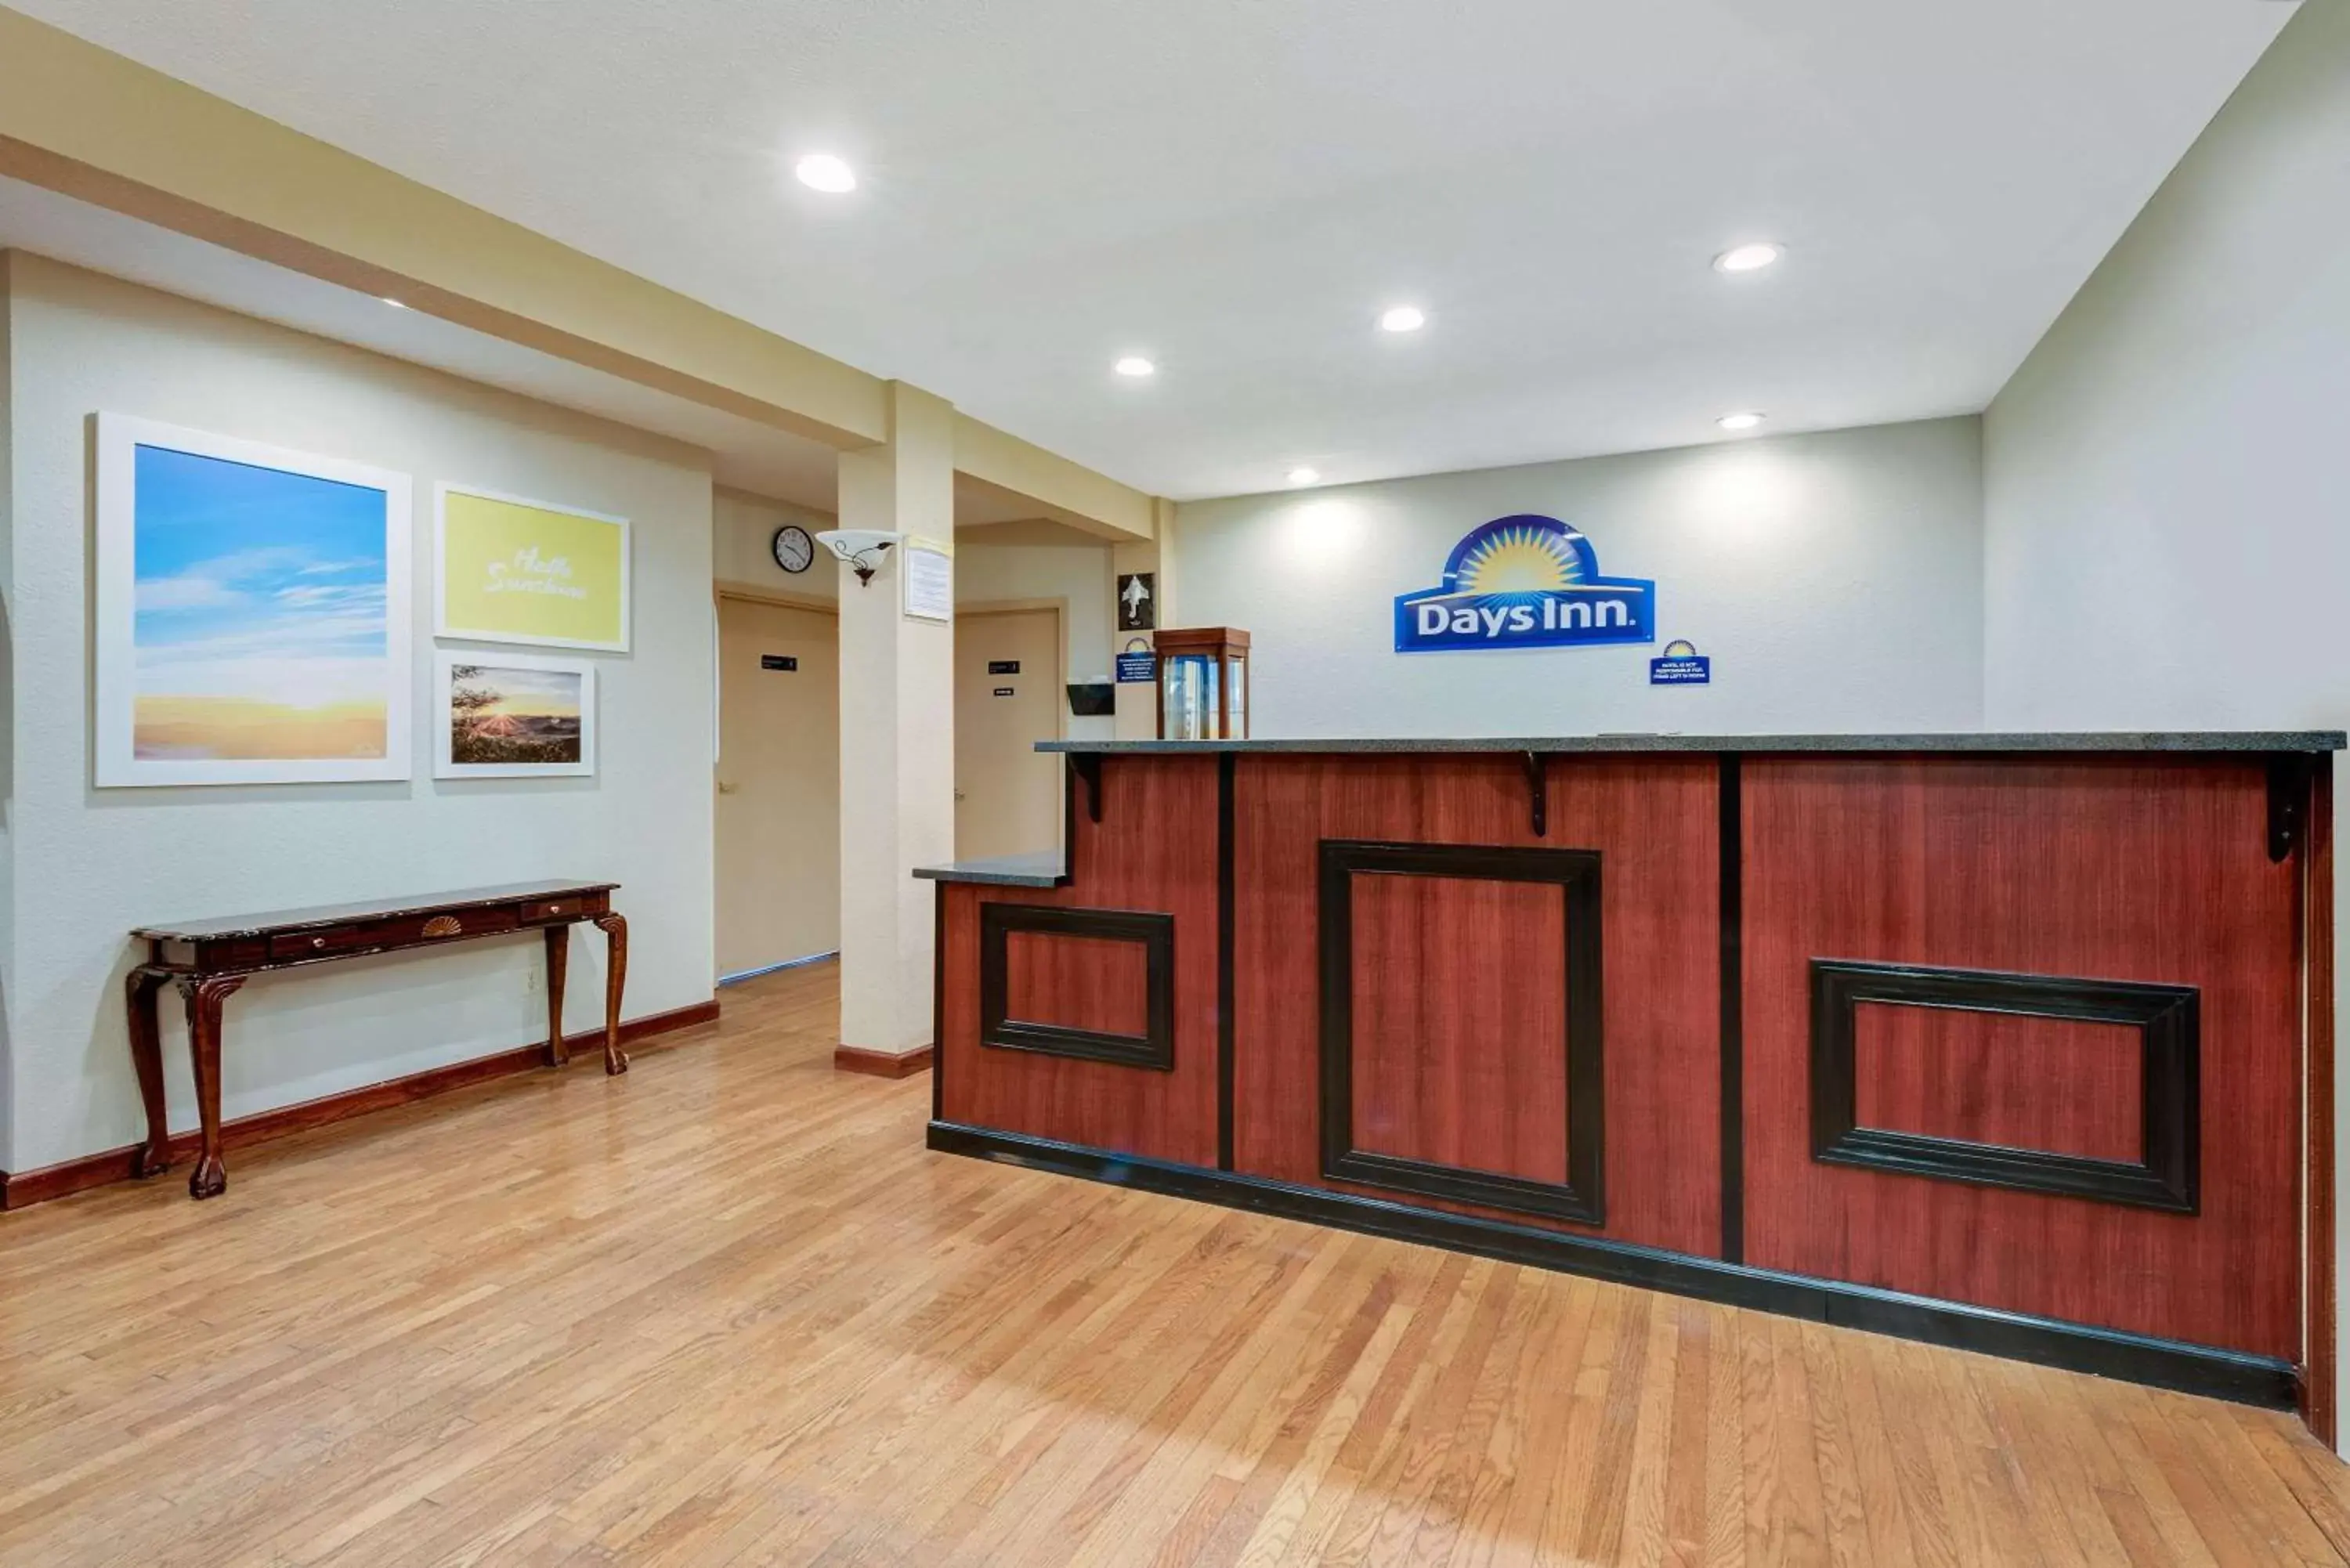 Lobby or reception, Lobby/Reception in Days Inn by Wyndham Fairmont